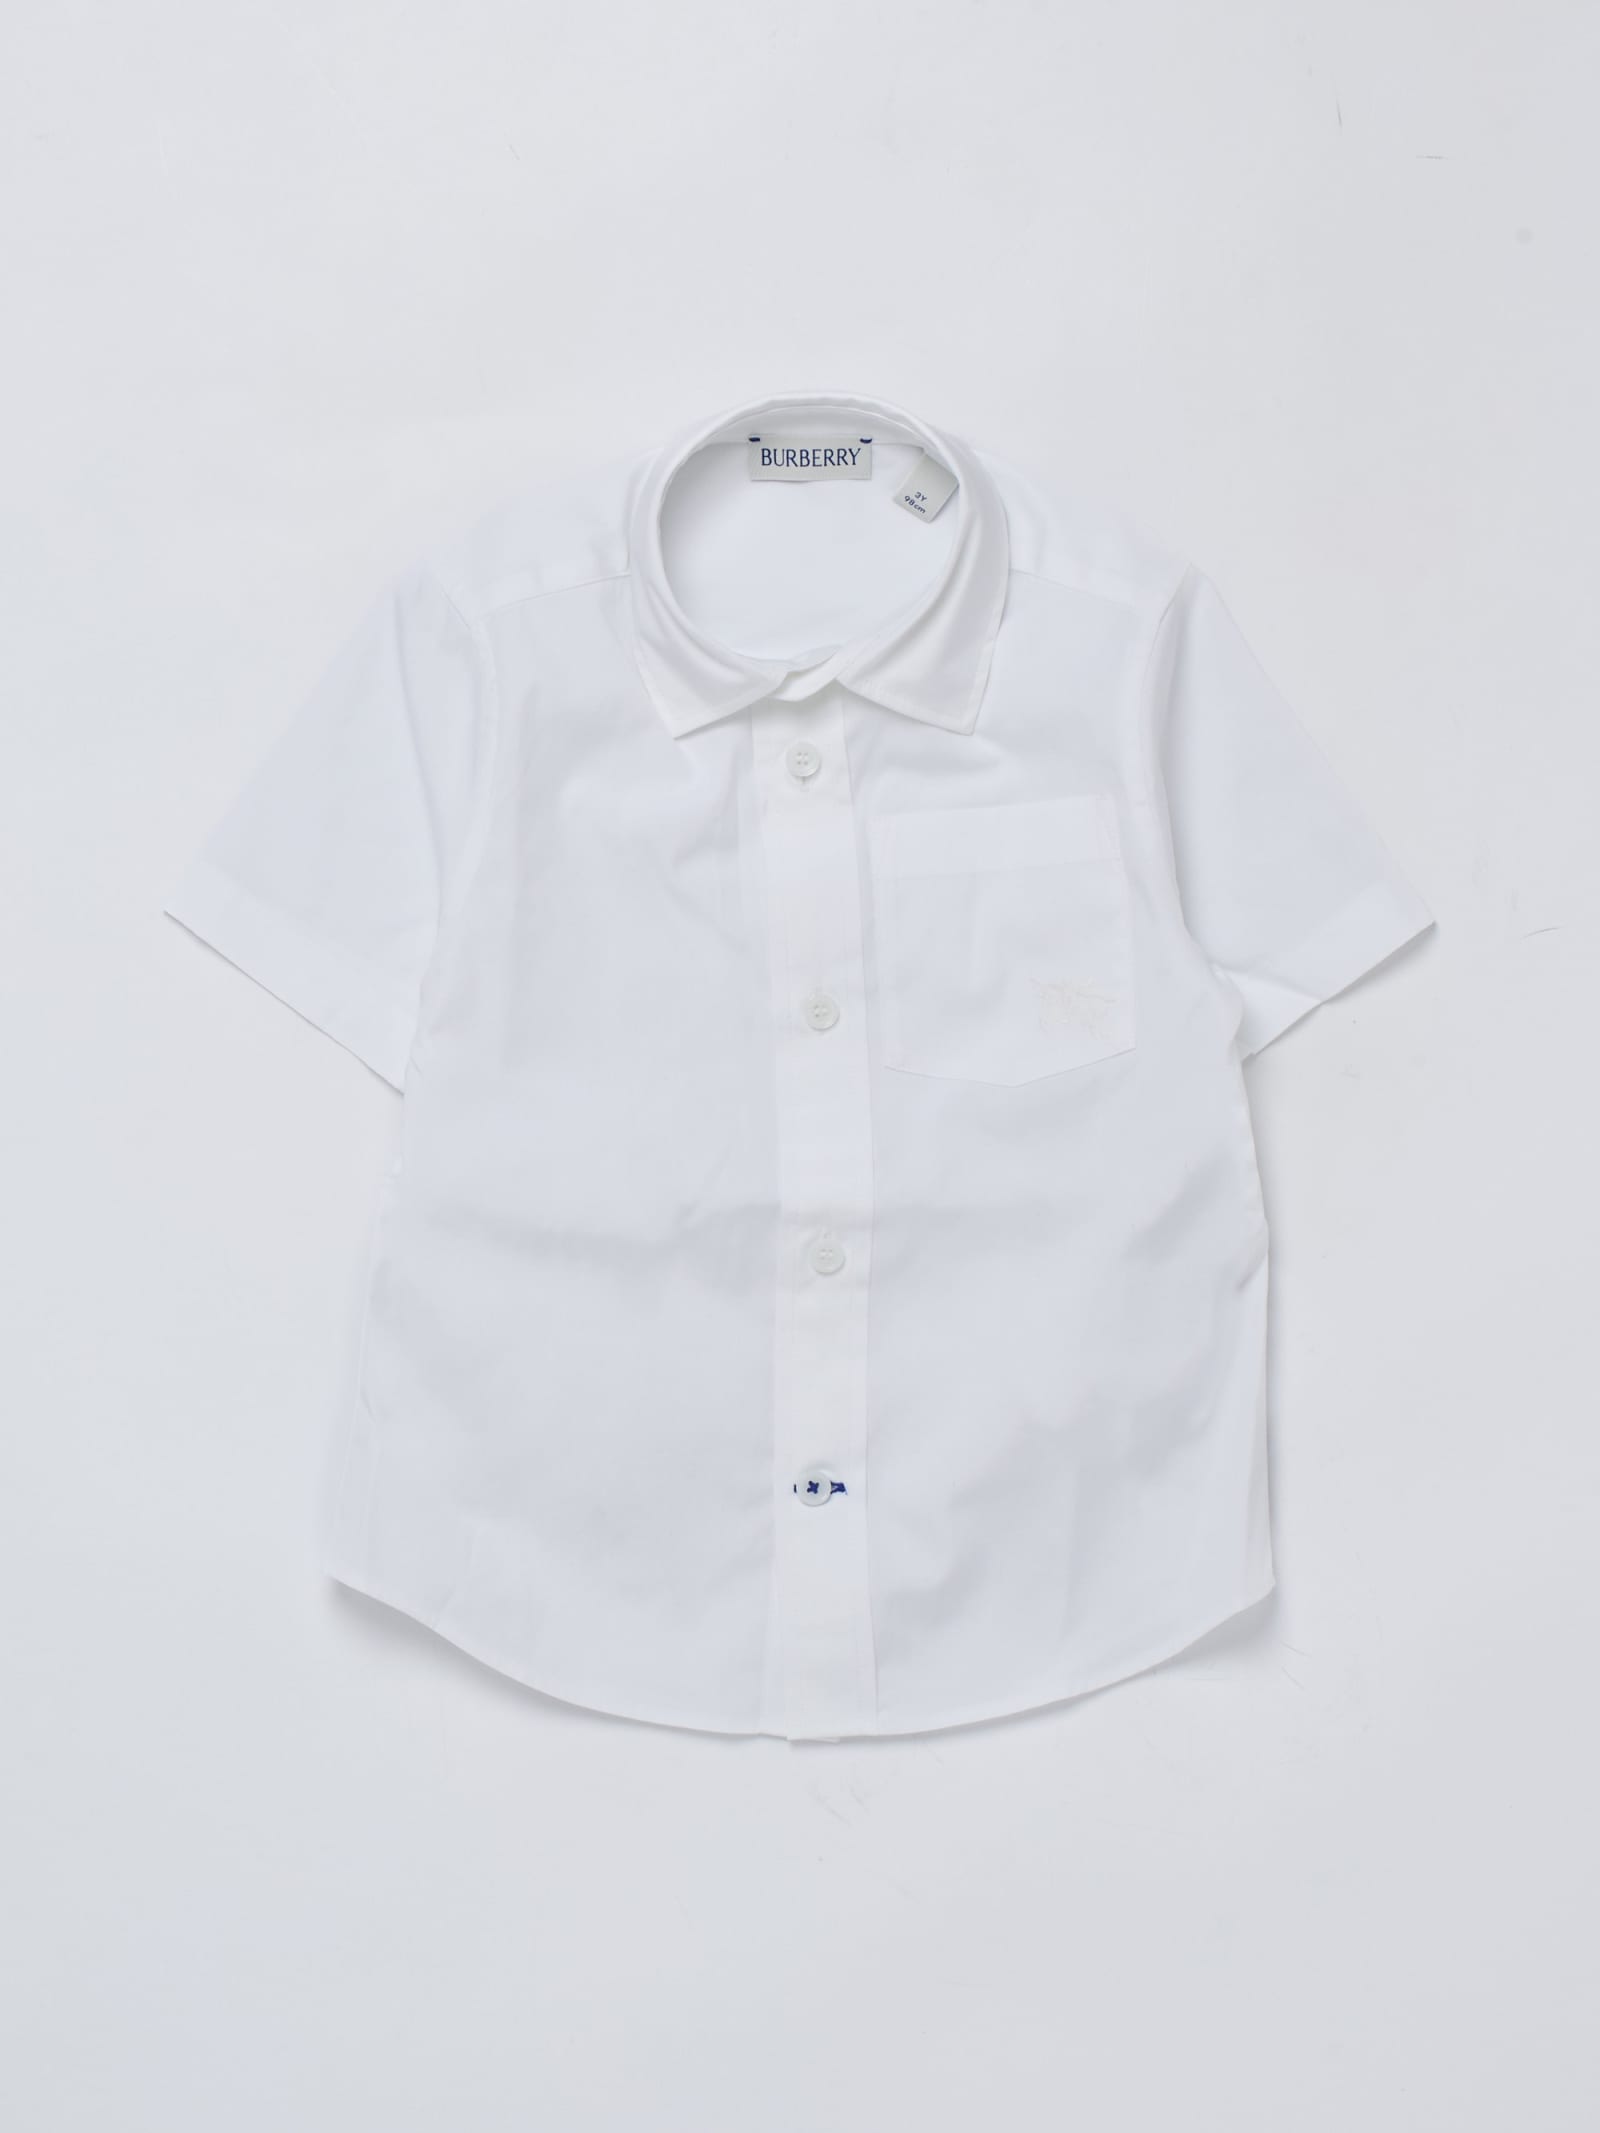 Burberry Kids' Owen Shirt Shirt In Bianco